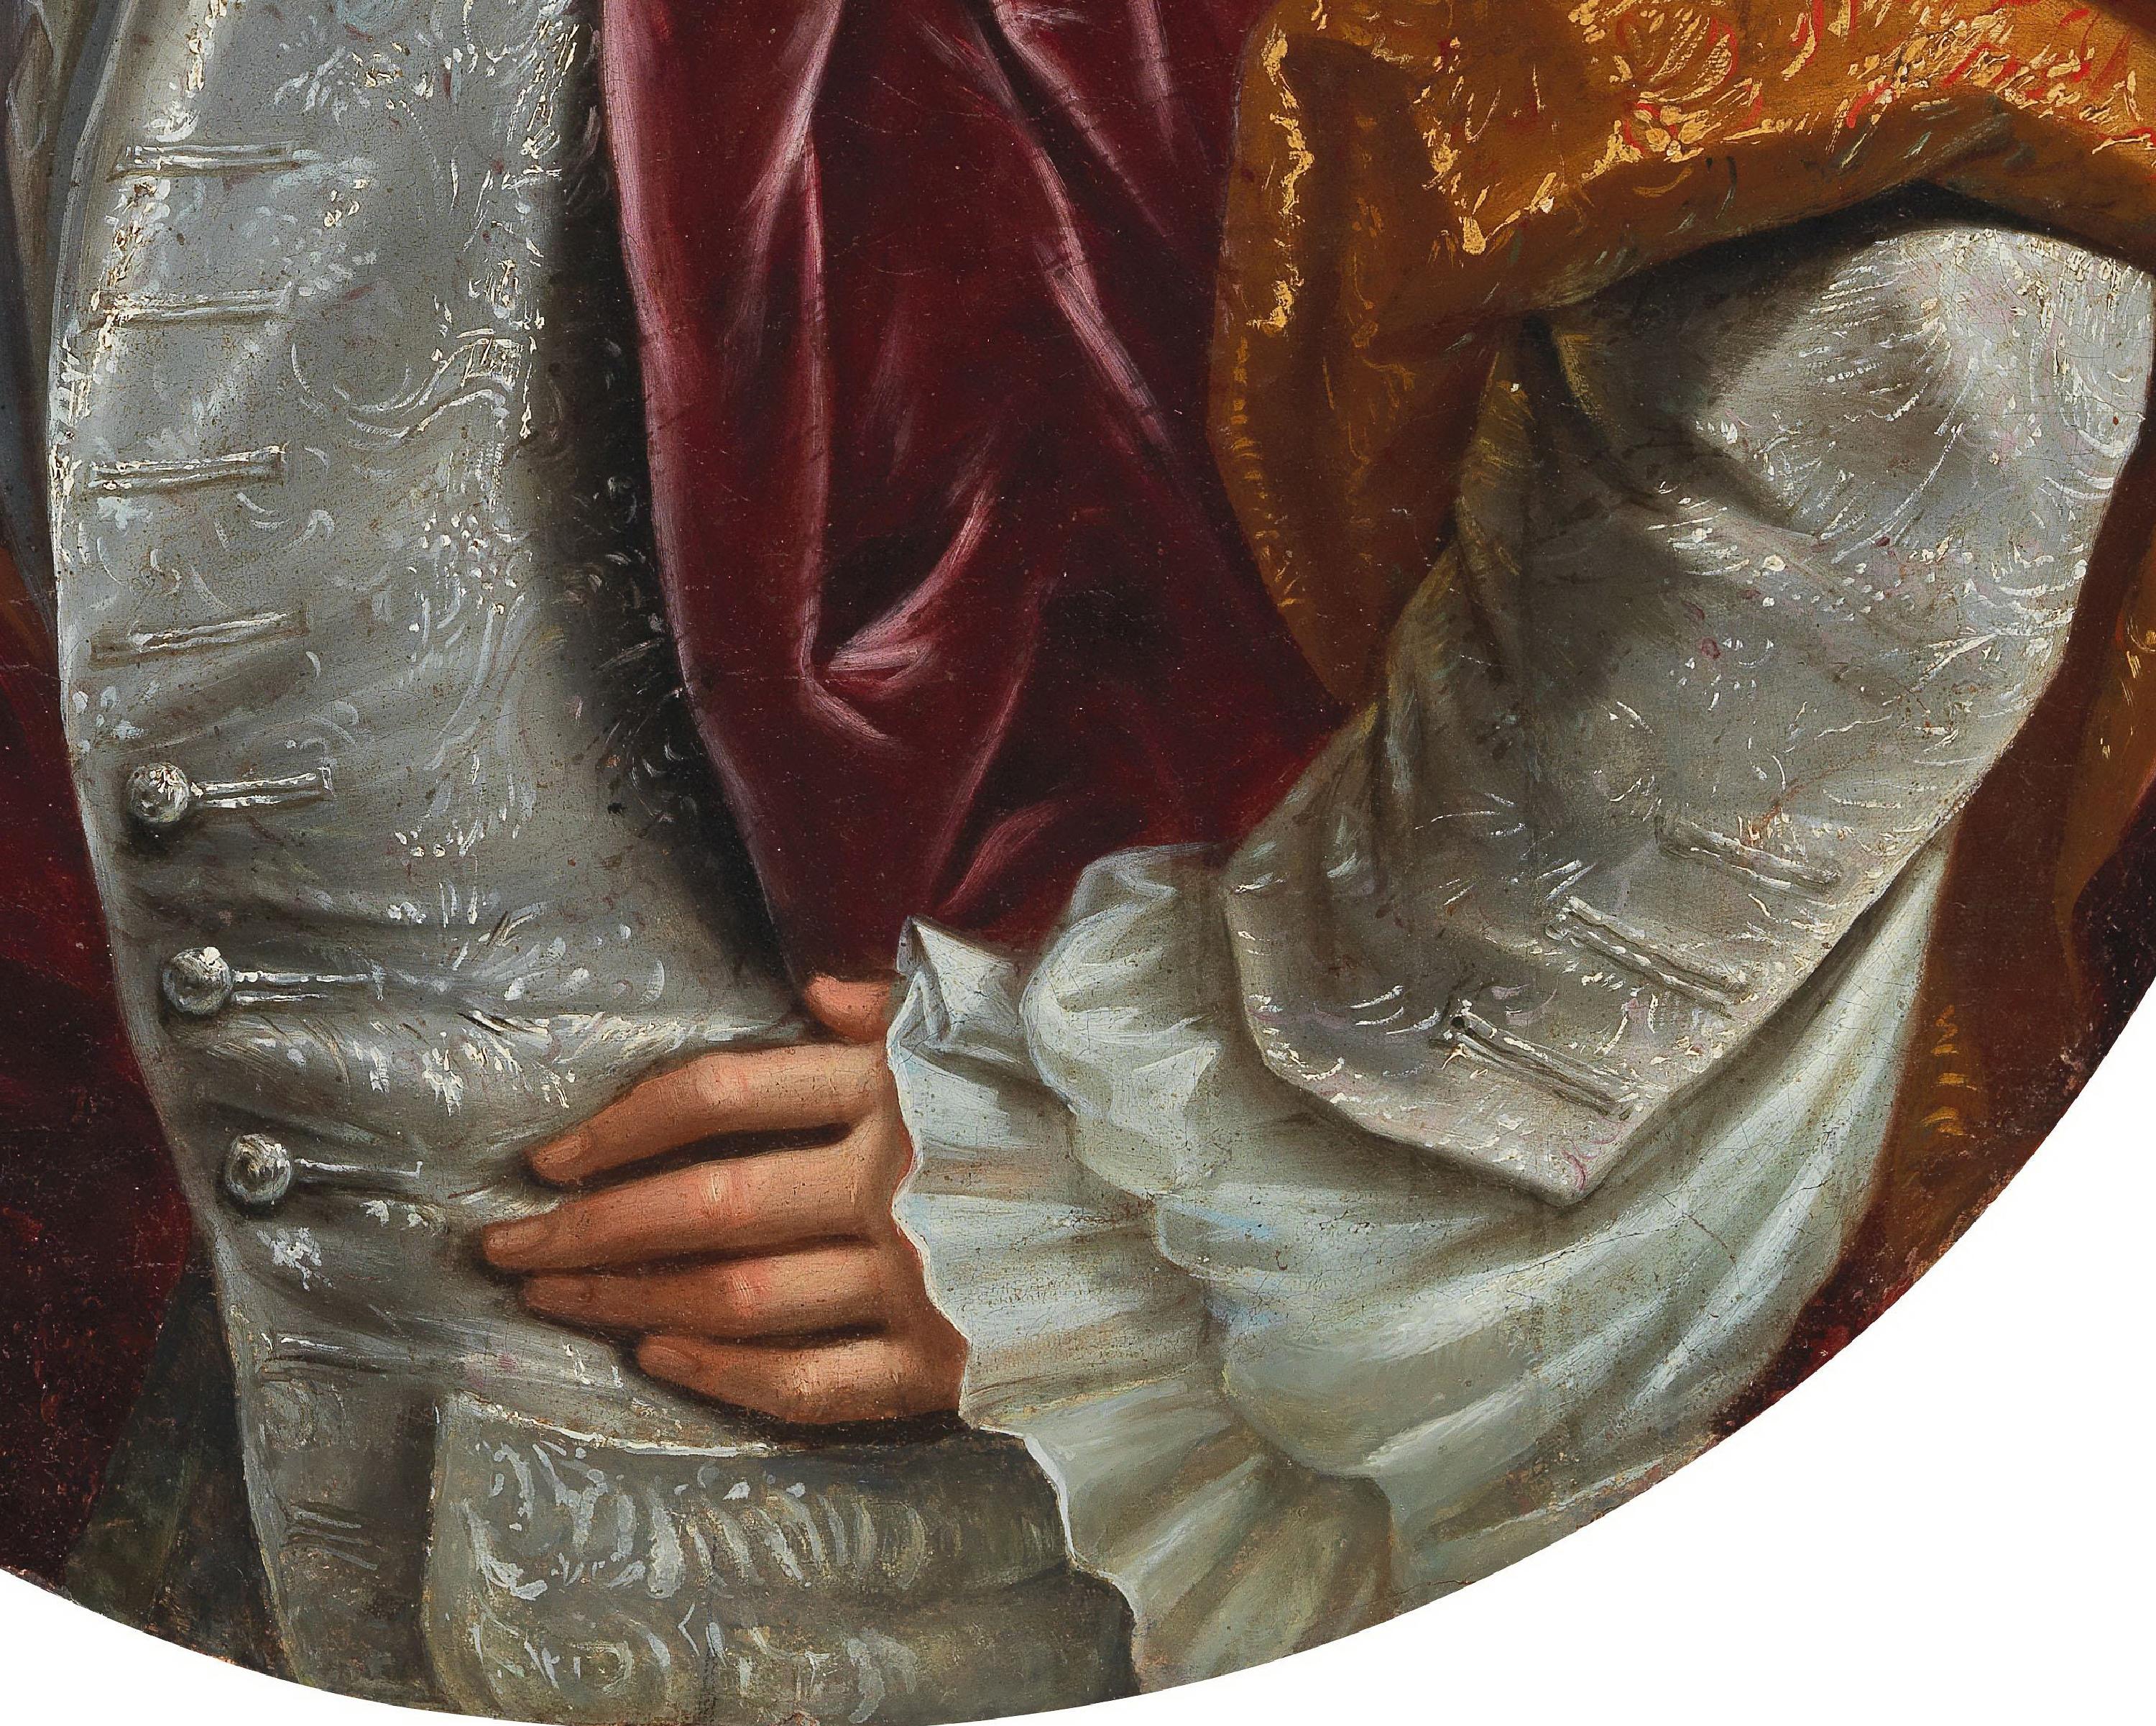 Daniele Sanguineti pour avoir suggéré l'attribution à Domenico Parodi (1672 - 1742). Il situe le tableau dans la période entre 1730 et 1740. Domenico Parodi, l'un des meilleurs portraitistes italiens entre la fin du XVIIe siècle et la première